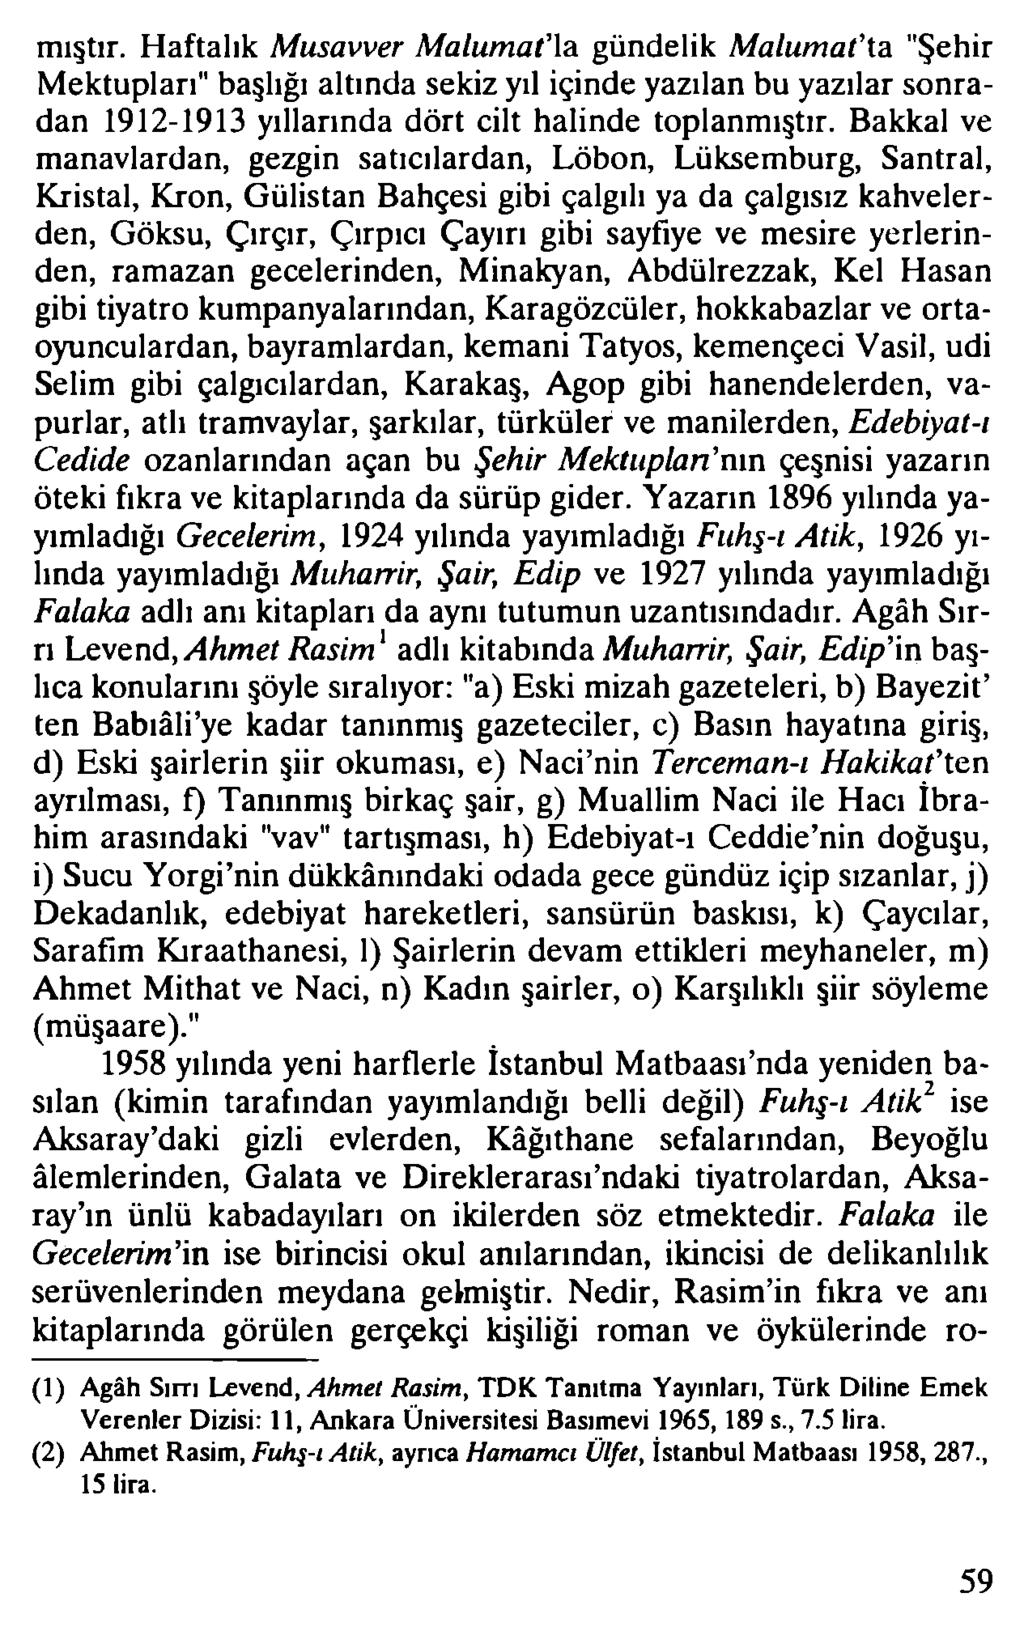 mıştır. Haftalık Musavver Malumat la gündelik Malumat'ta "Şehir Mektupları" başlığı altında sekiz yıl içinde yazılan bu yazılar sonradan 1912-1913 yıllarında dört cilt halinde toplanmıştır.